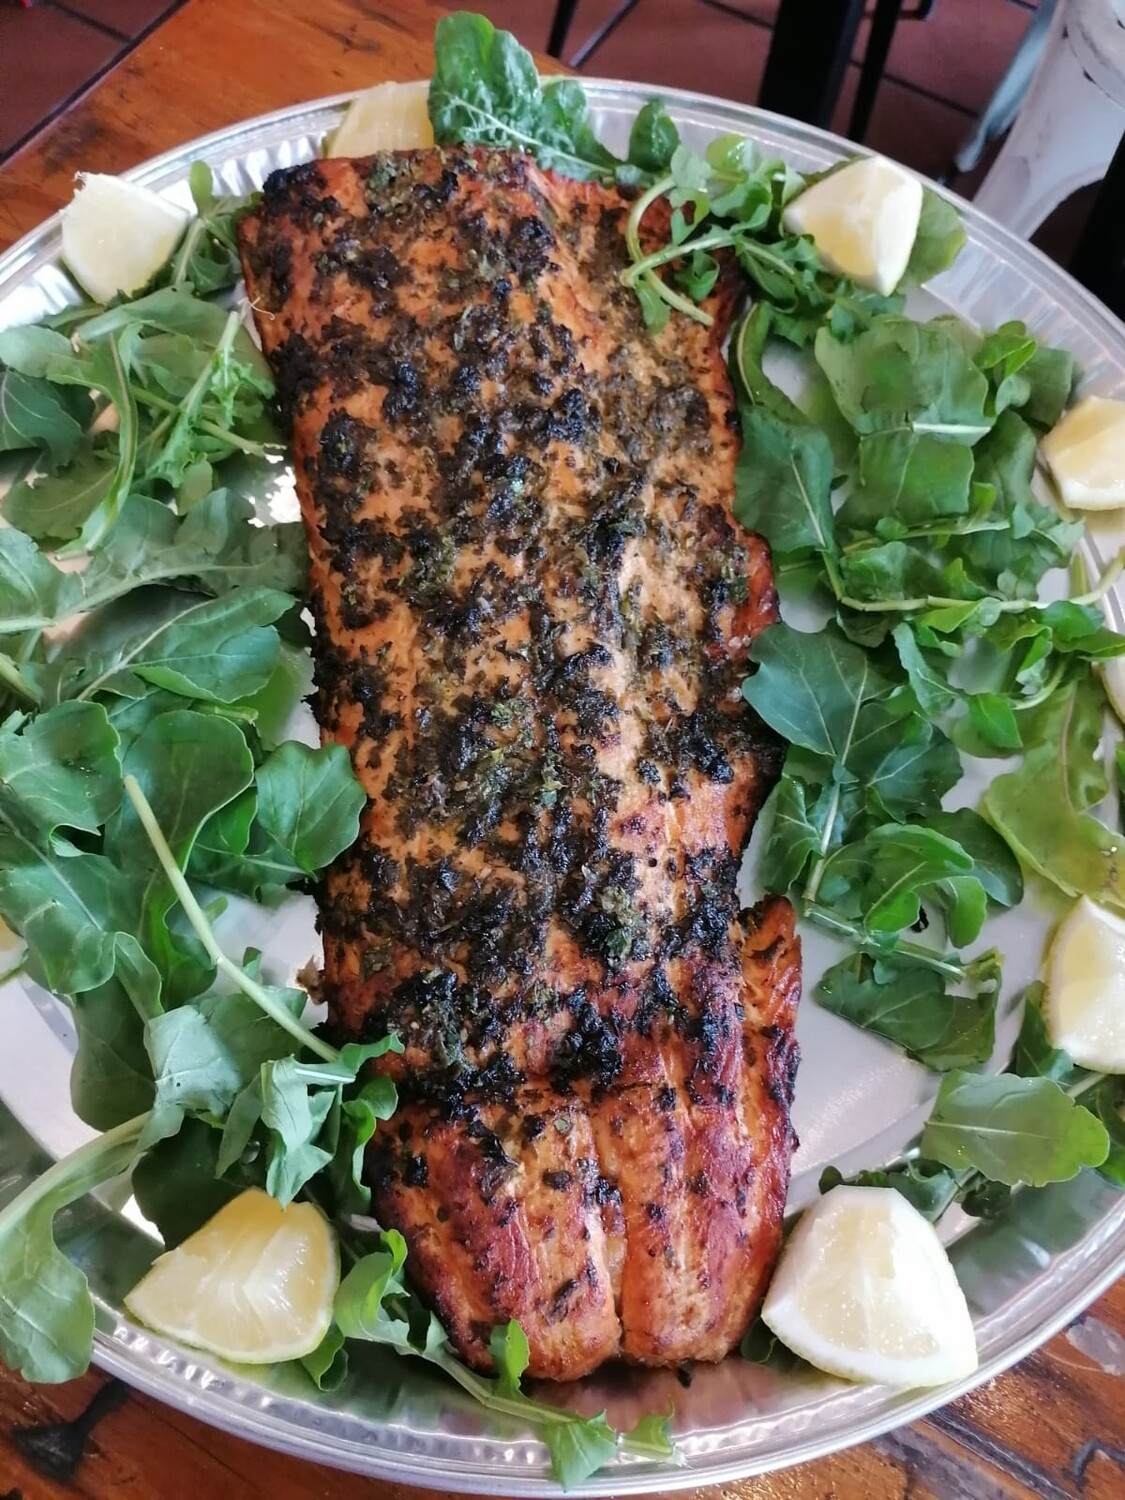 Fish - Hot Smoked Salmon Next Door Style